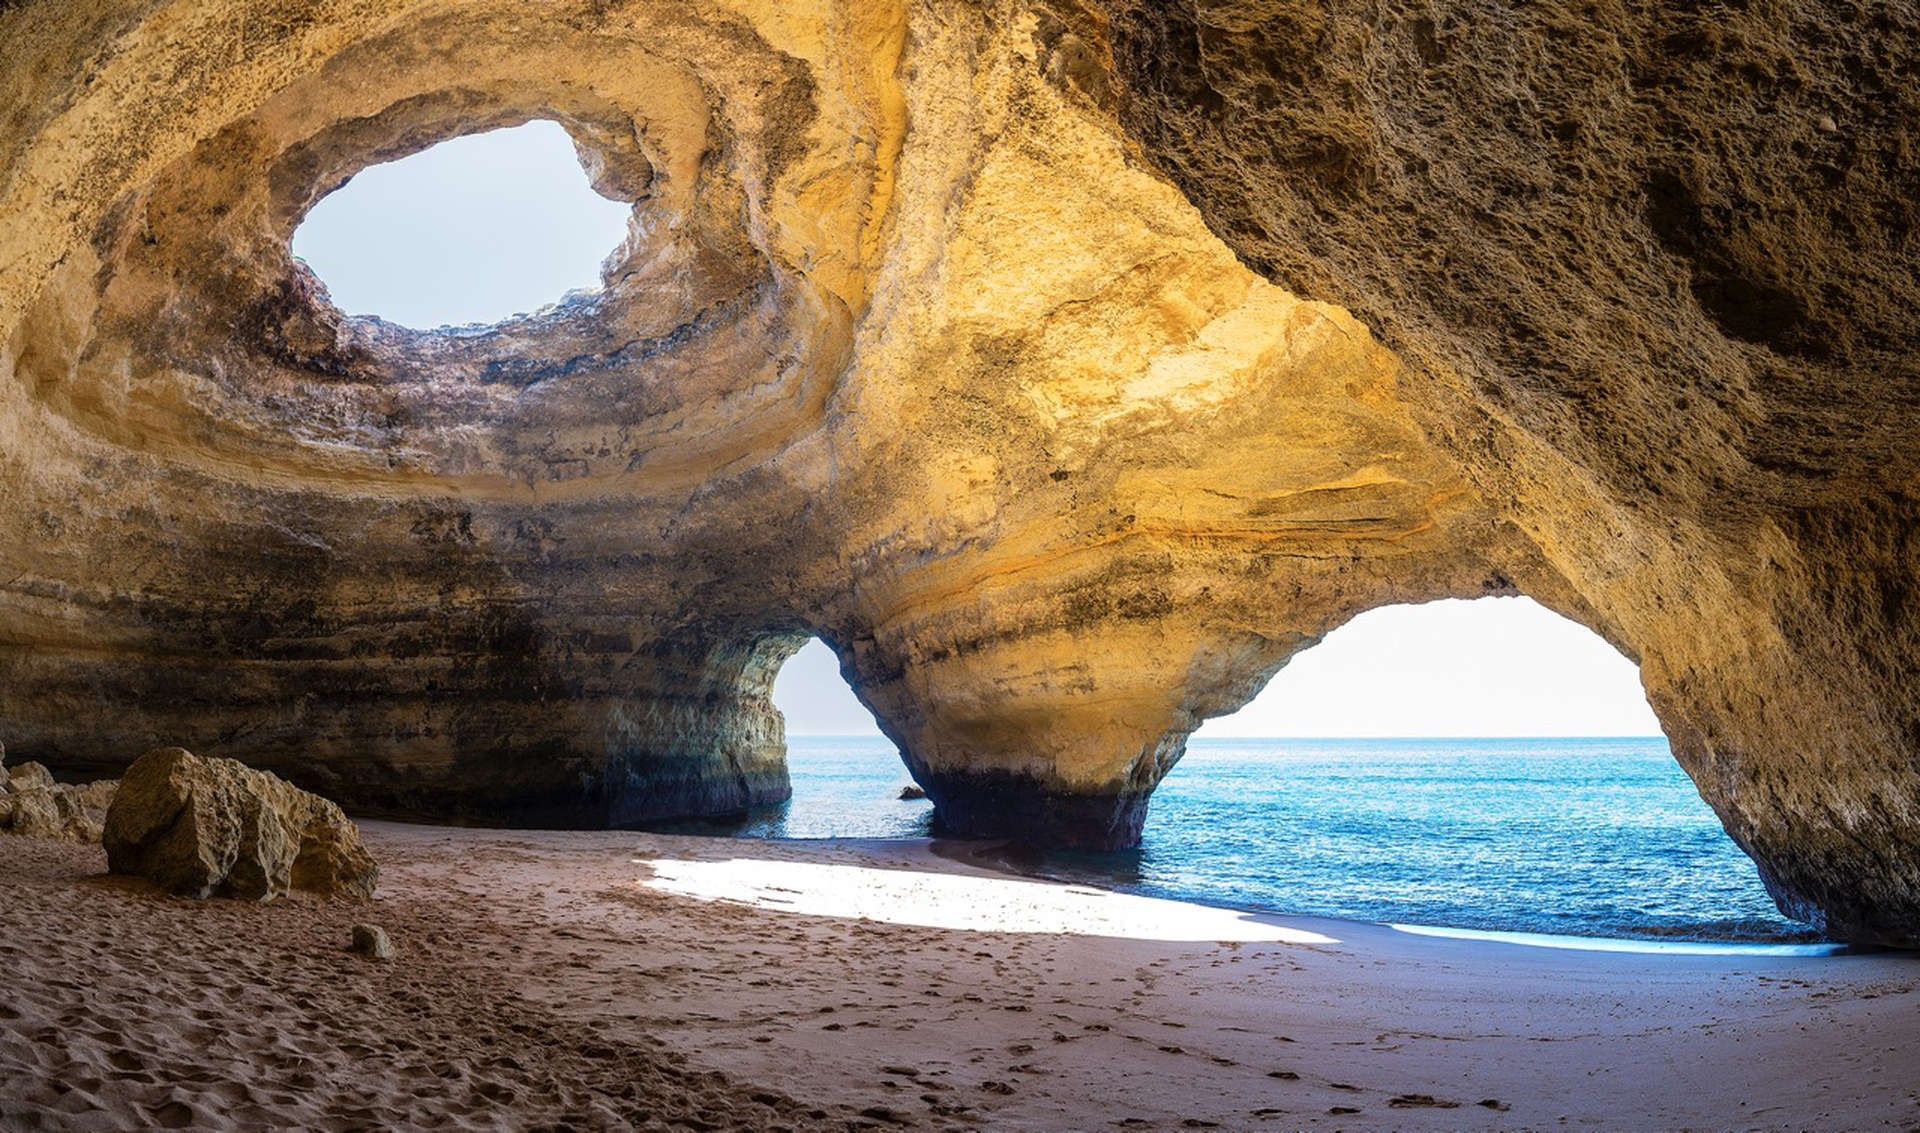 Benagil caves, Portugal